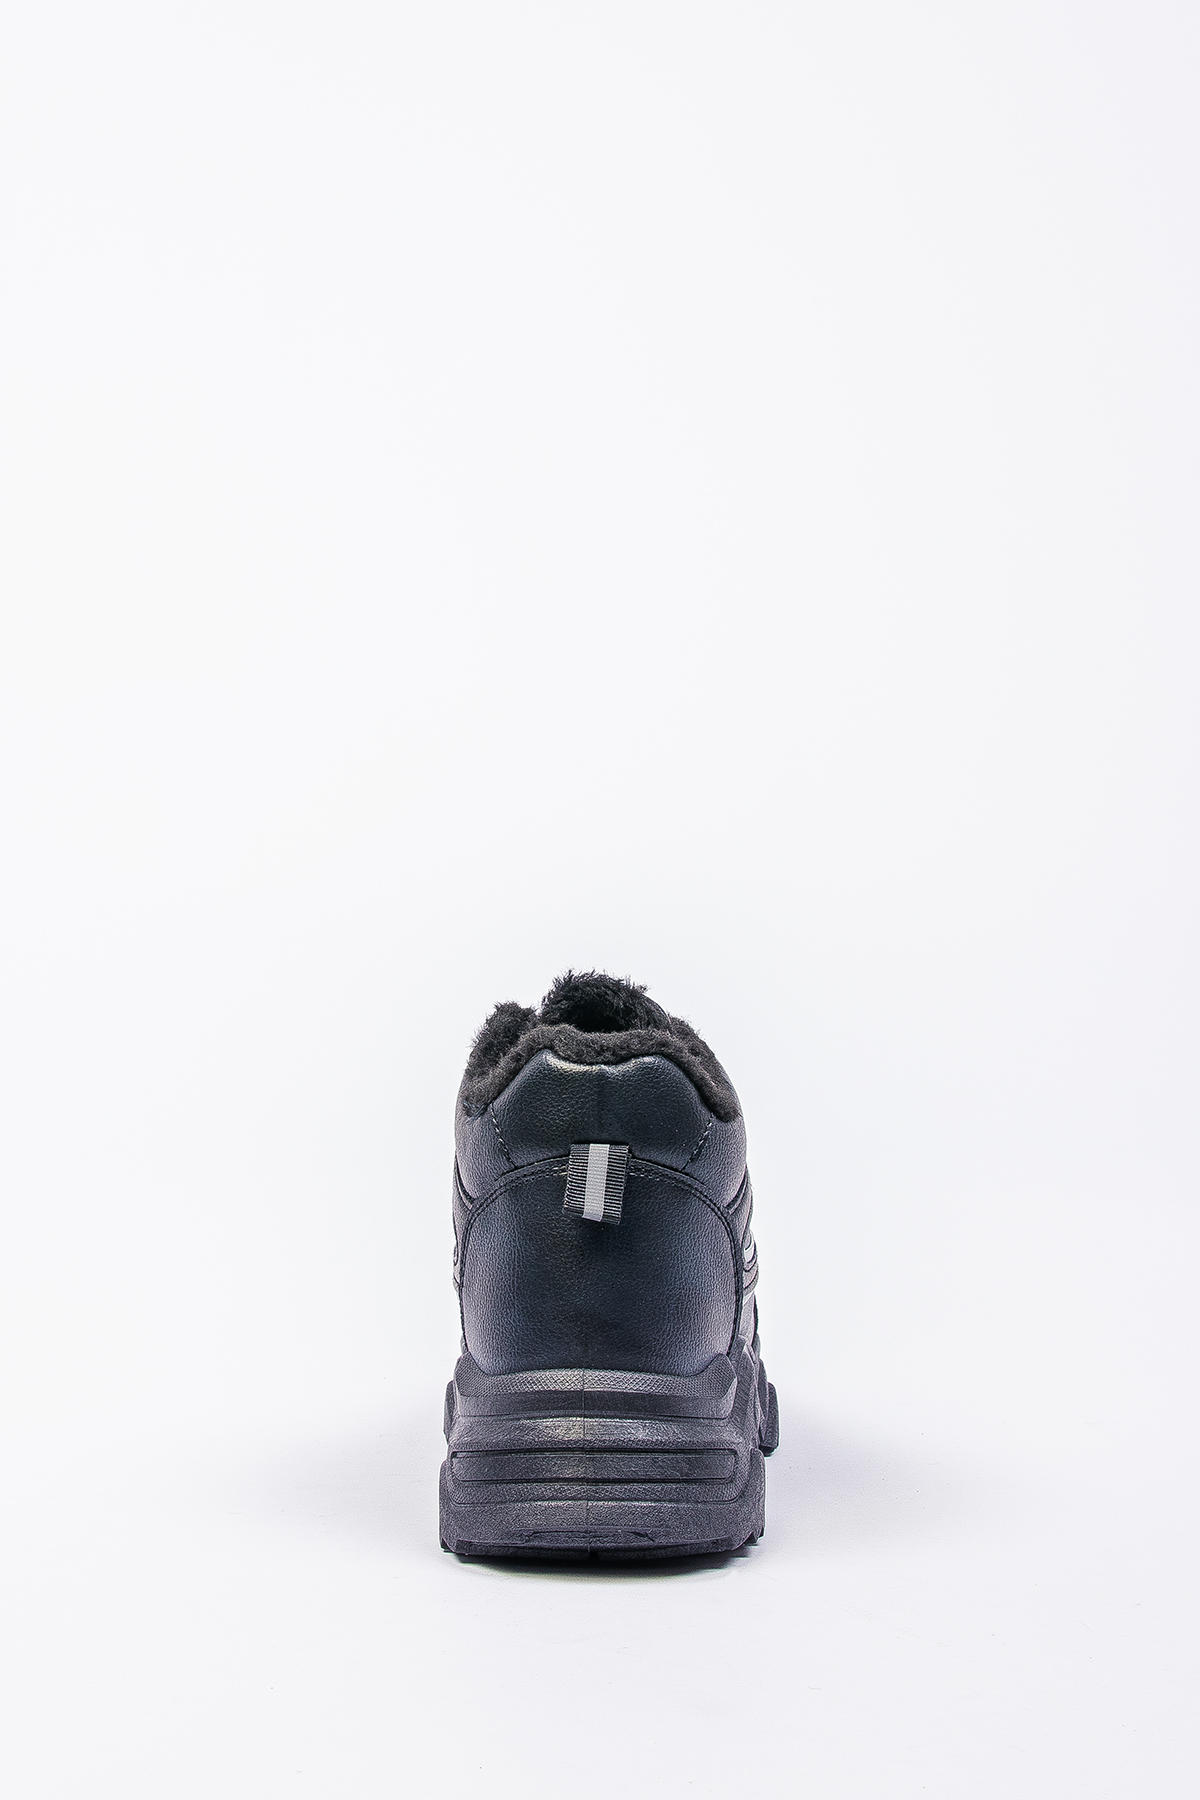 125151-2 Ботинки жен. цв. черный TORSION FIELD (иск.кожа, иск.мех)